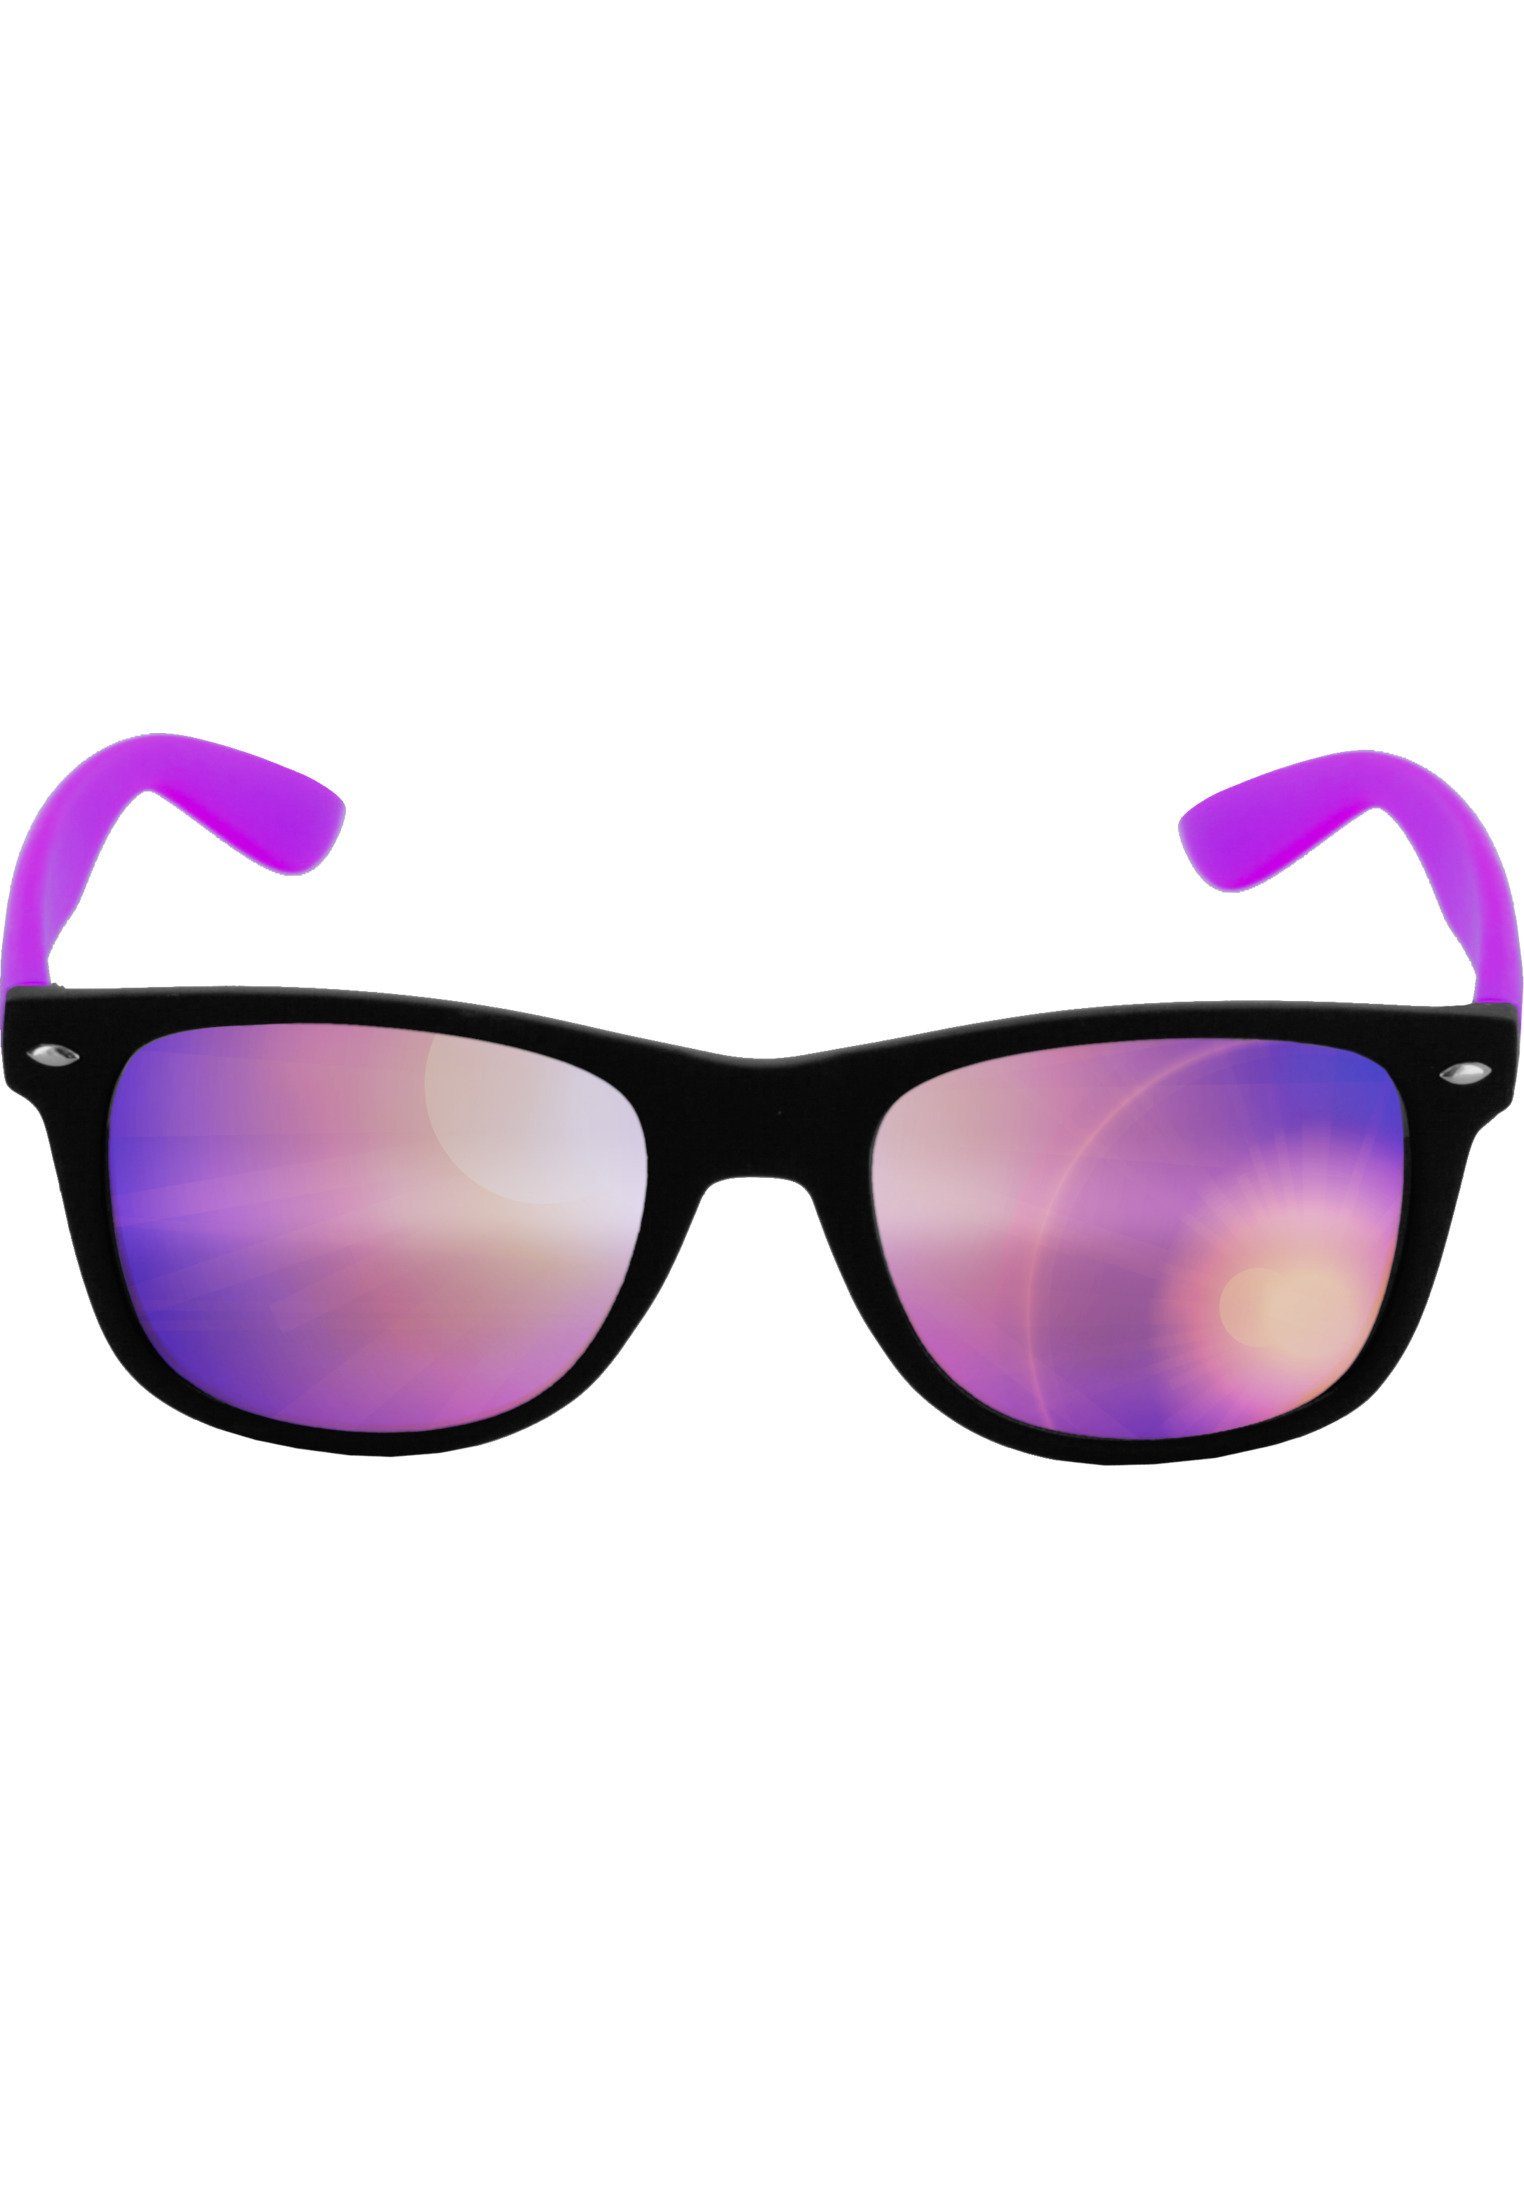 MSTRDS Sonnenbrille Accessoires Sunglasses Likoma Mirror blk/pur/pur | Sonnenbrillen